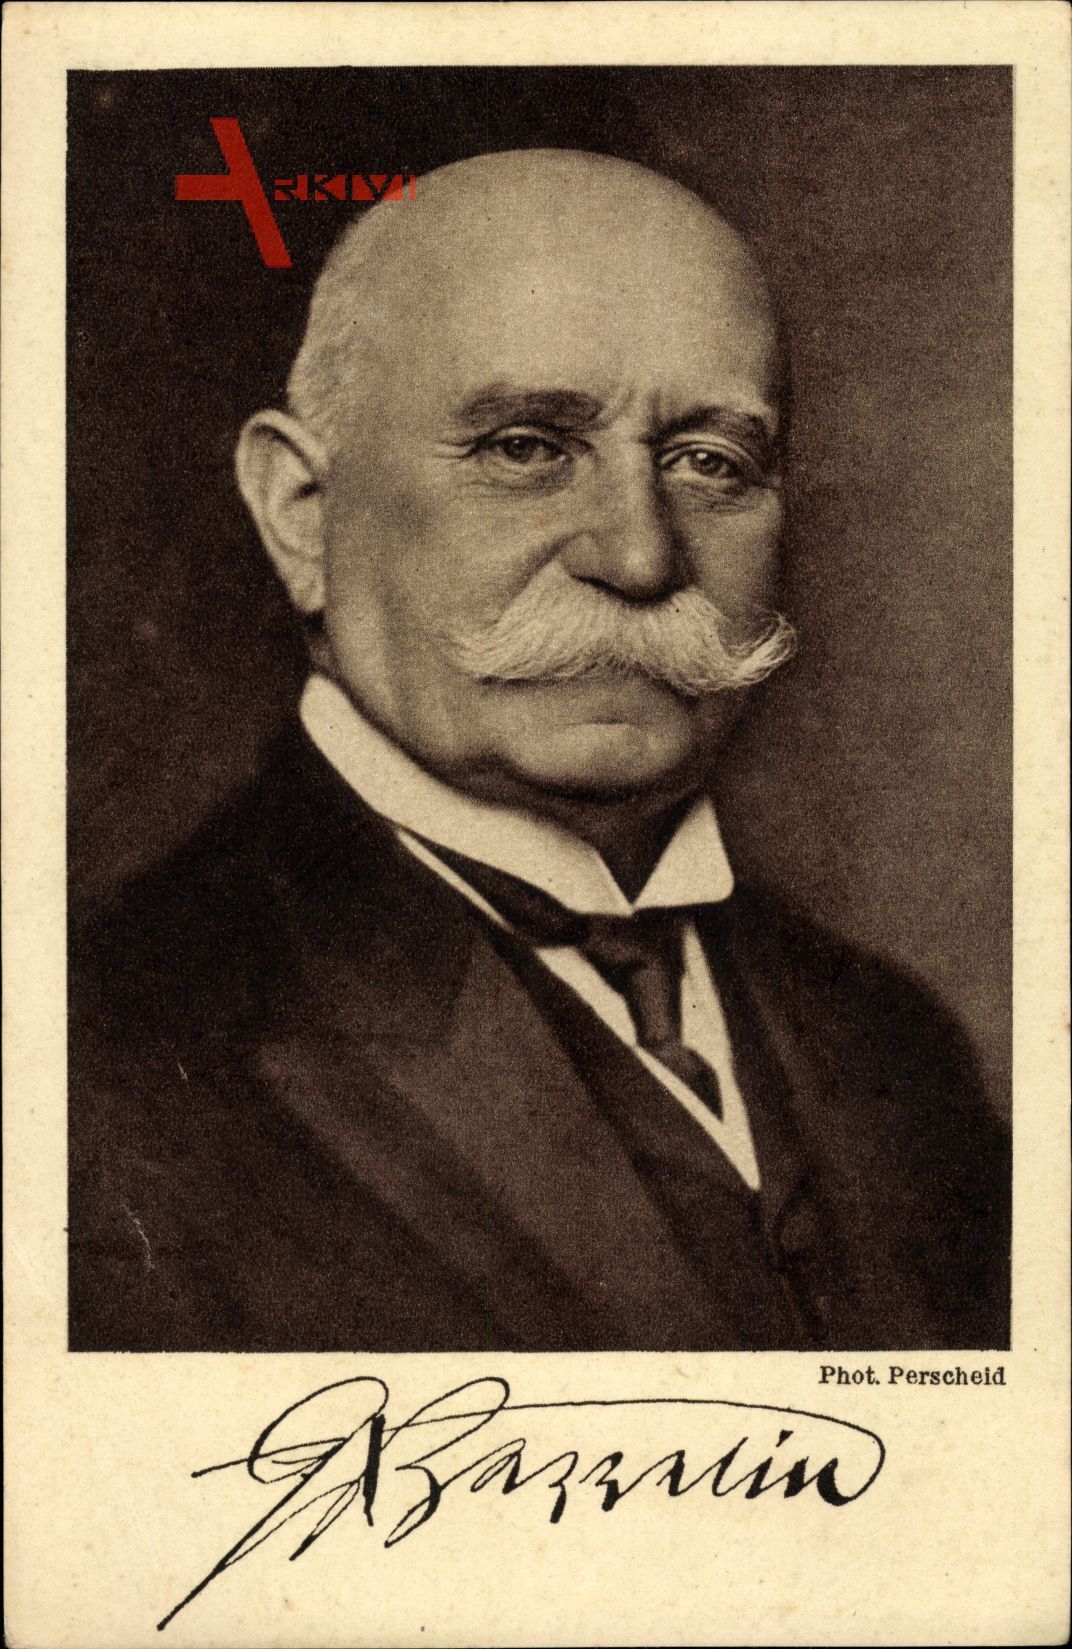 Luftfahrtpionier und Erfinder Ferdinand Graf von Zeppelin, Portrait